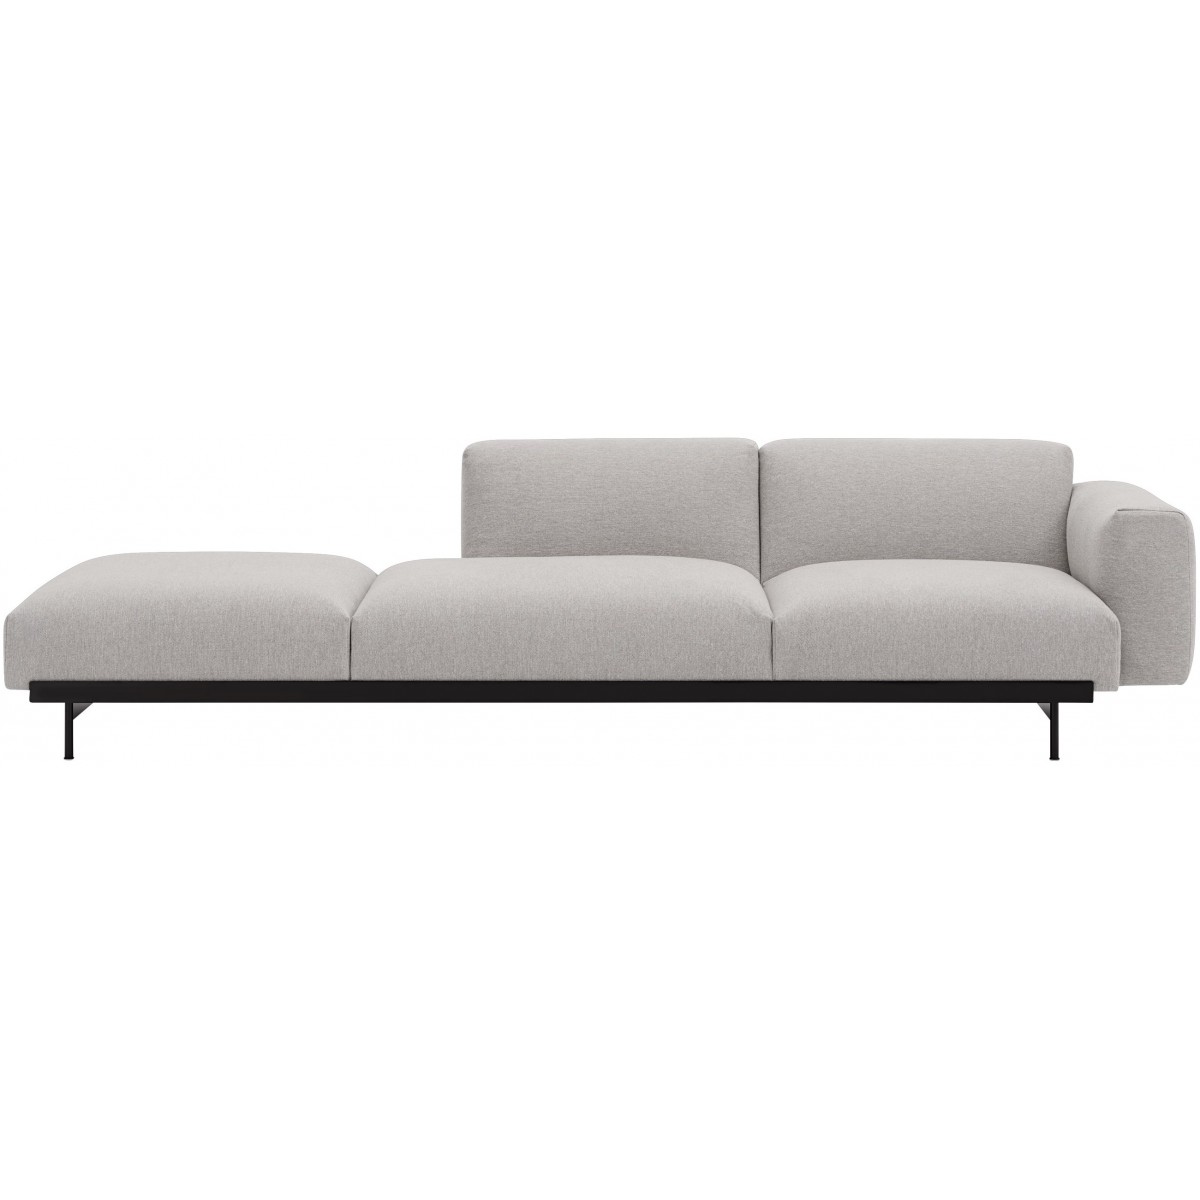 Clay 12 / black – In Situ 3-seater sofa / configuration 4 – 279 x 107 cm